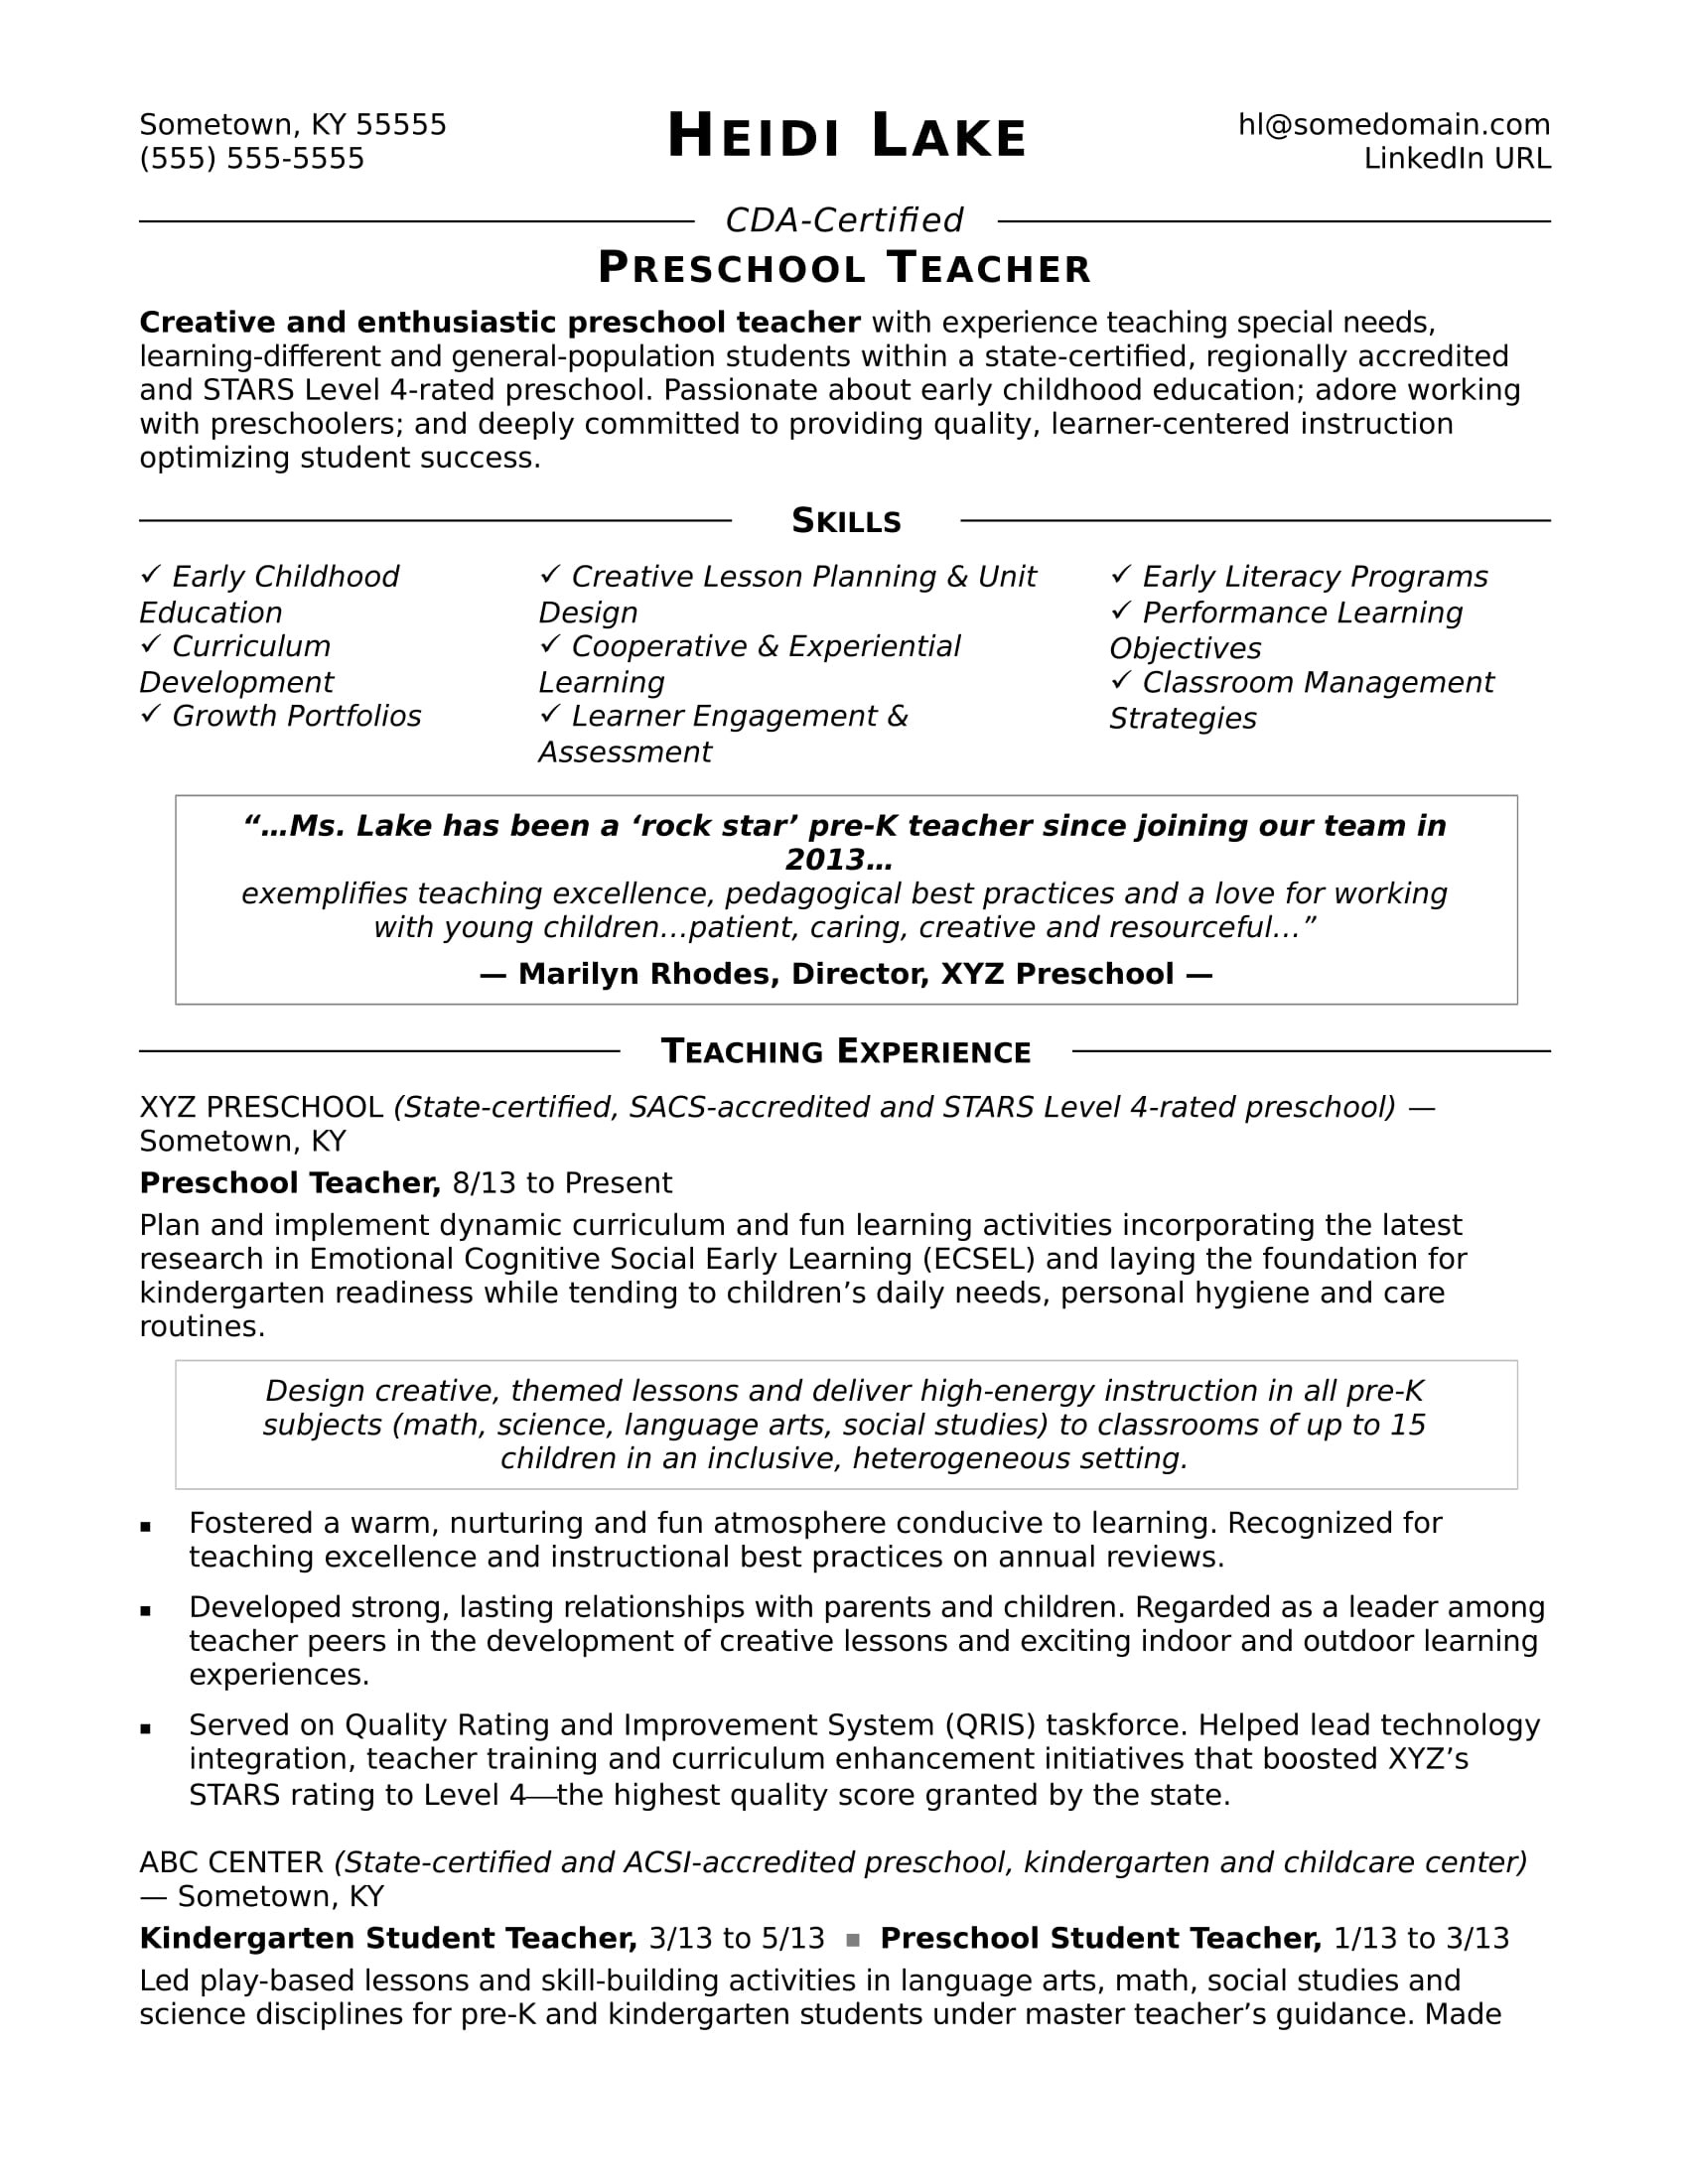 Sample Resume for Preschool Teacher with No Experience In India Preschool Teacher Resume Sample Monster.com